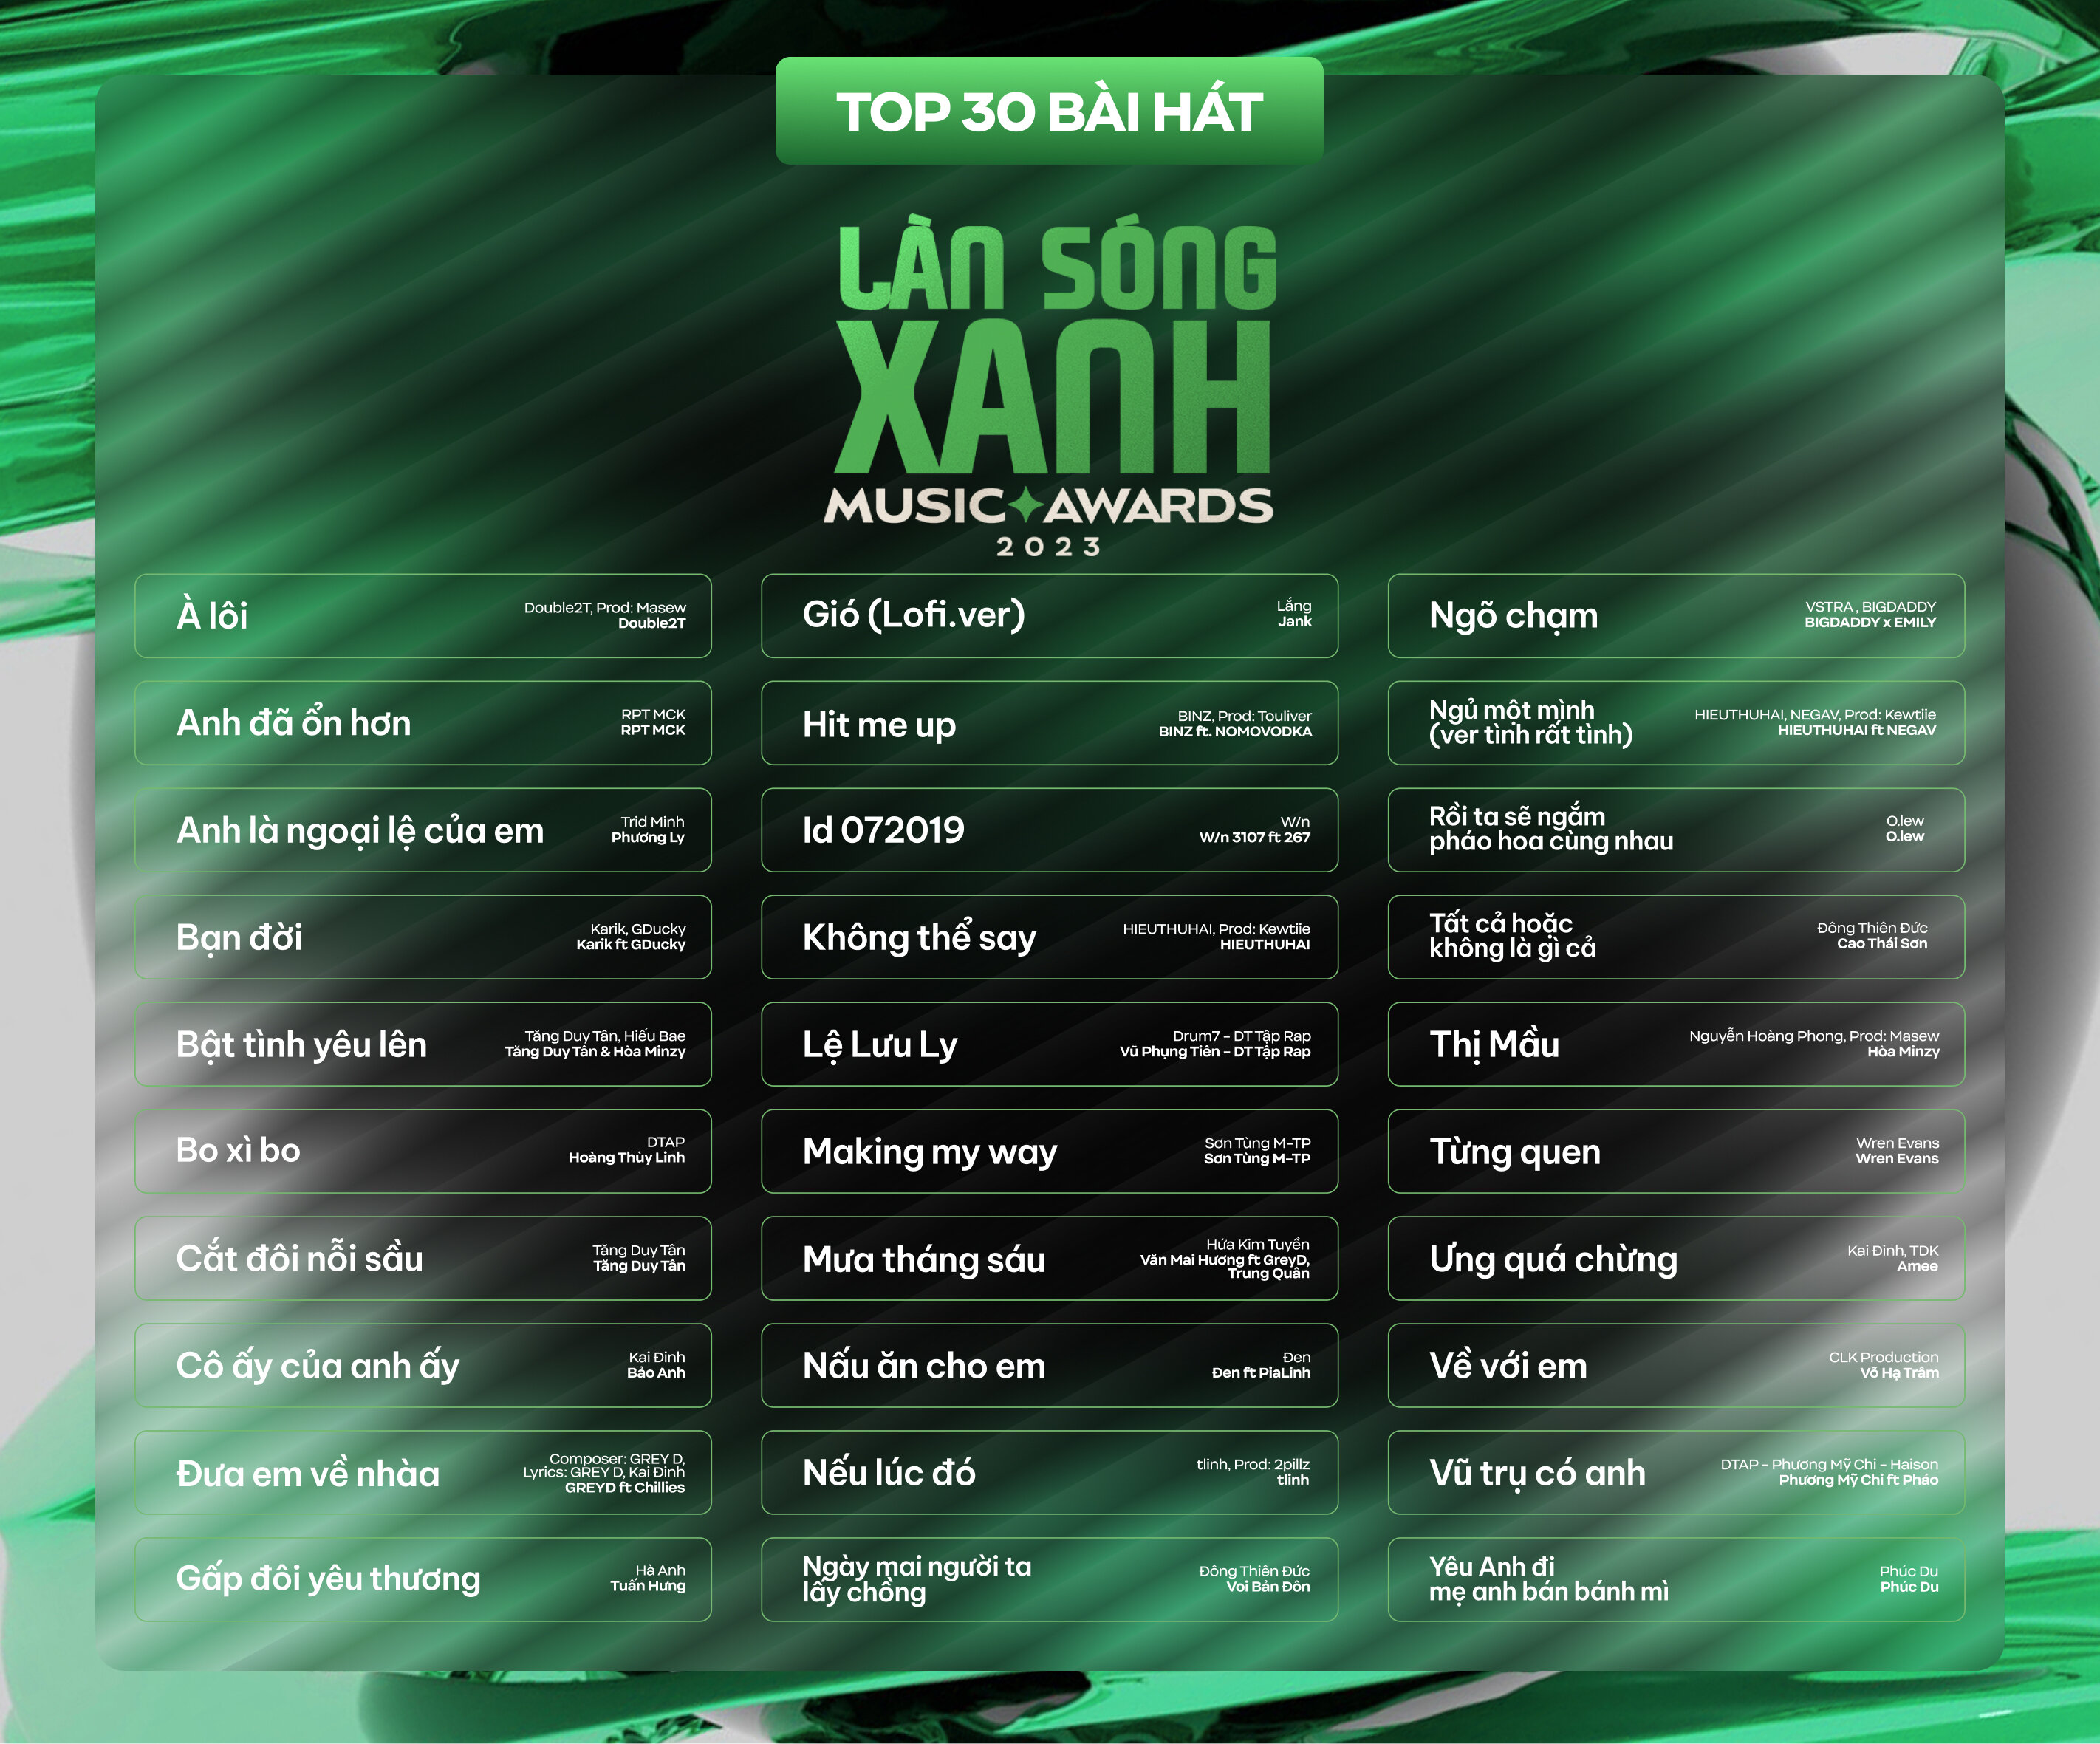 Top 30 ca khúc nằm trong bảng bình chọn giải thưởng Làn Sóng Xanh 2023.